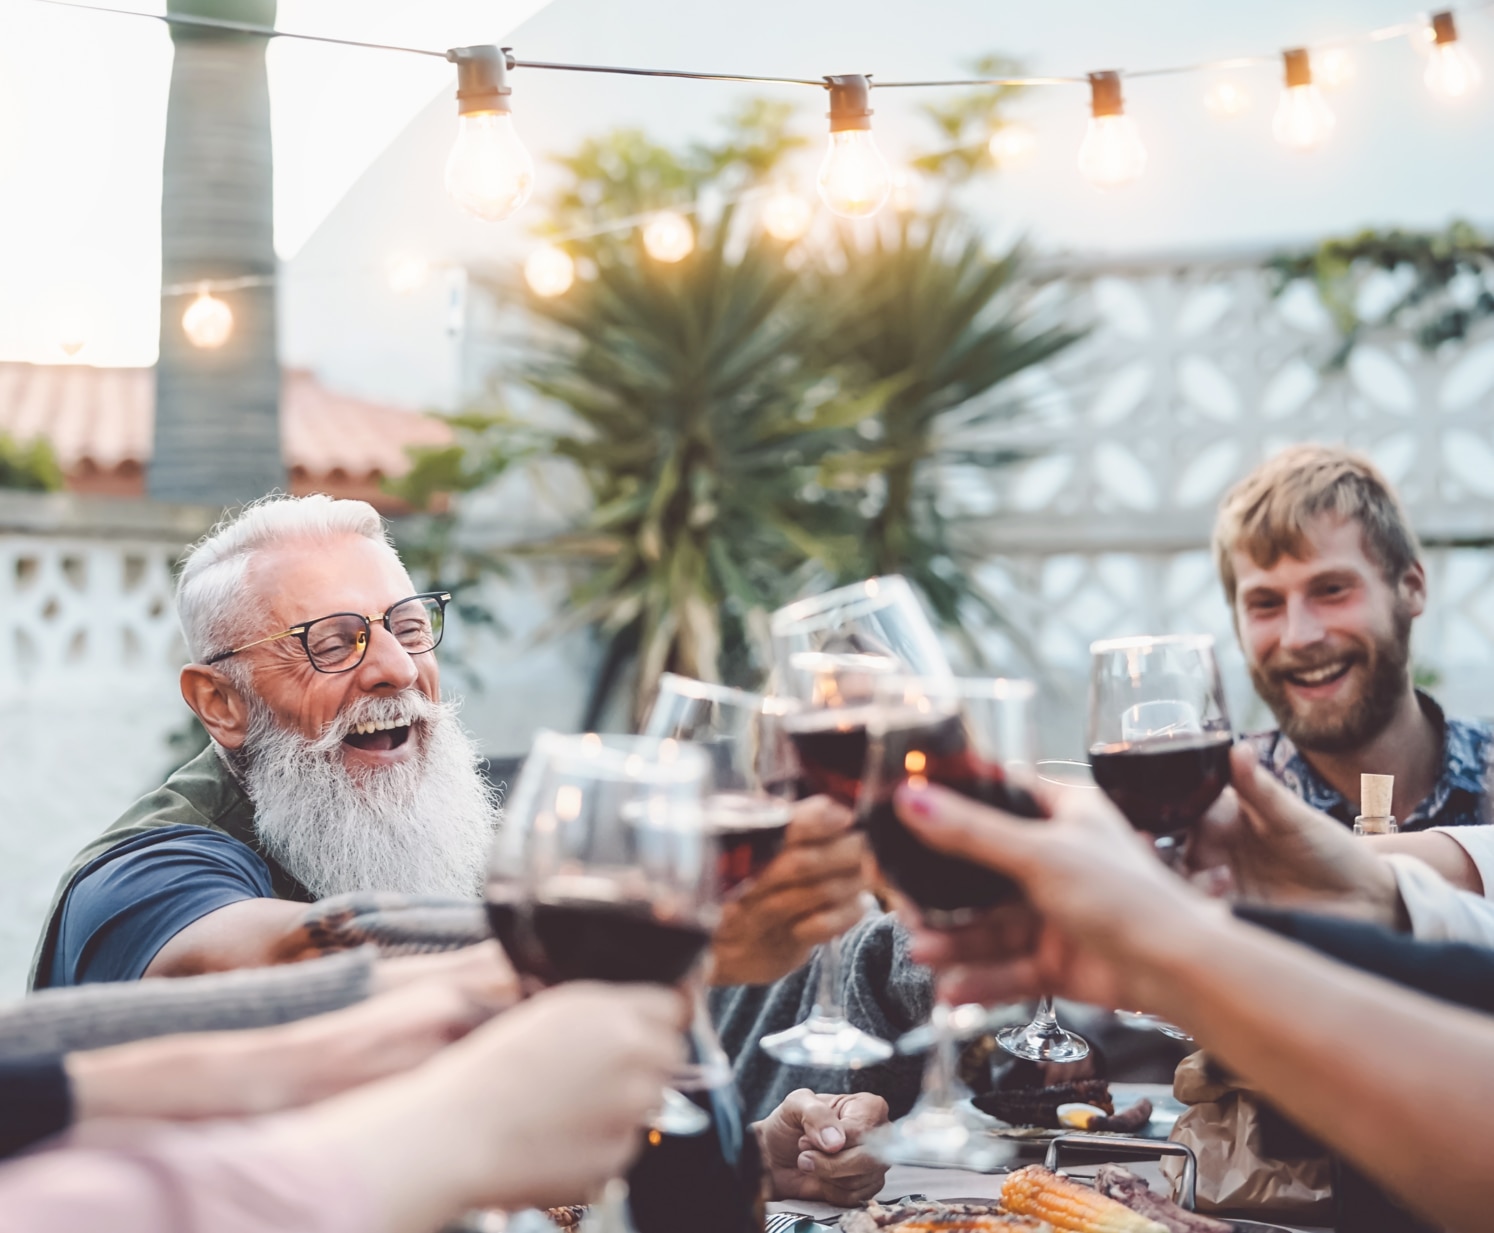 Boldog család a szabadban étkezik és vörösborral koccint – Különböző korú és etnikumú emberek szórakoznak egy grillpartin – Szülőség, ifjúság és idősek hétvégi tevékenységének koncepciója.